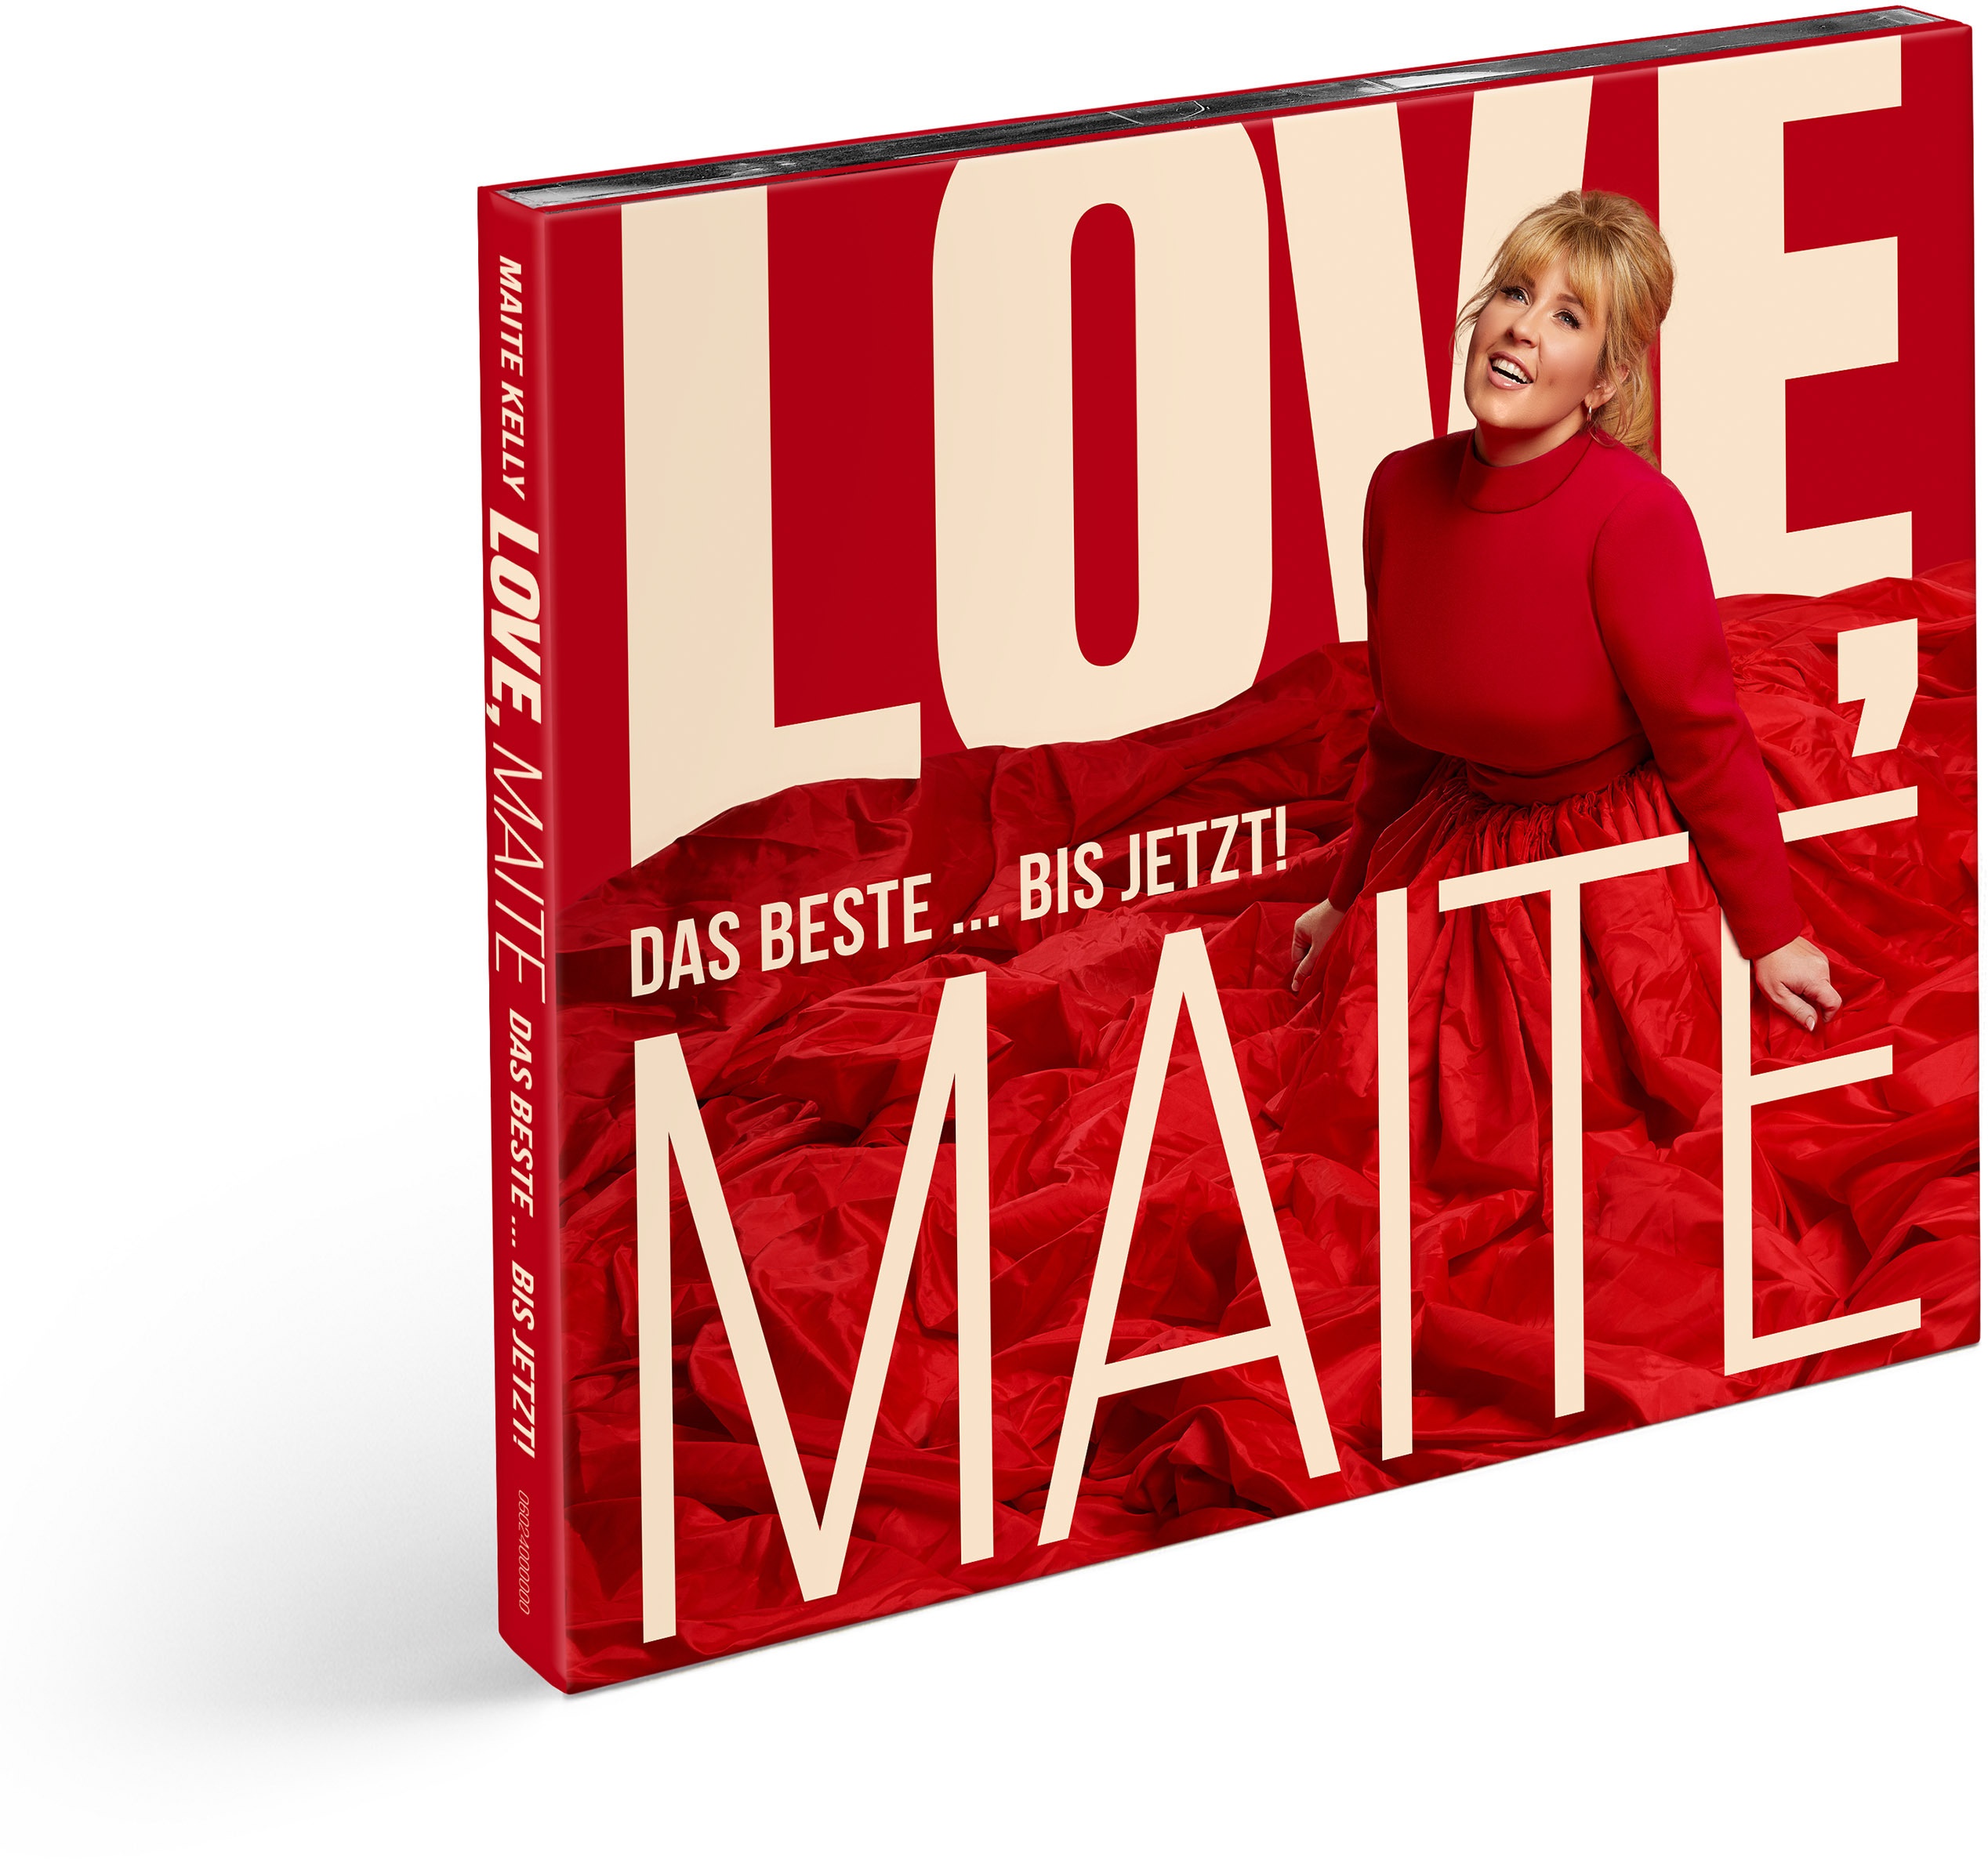 Love  Maite - Das Beste... bis jetzt! (Deluxe Edition  2 CDs) - Maite Kelly. (CD)